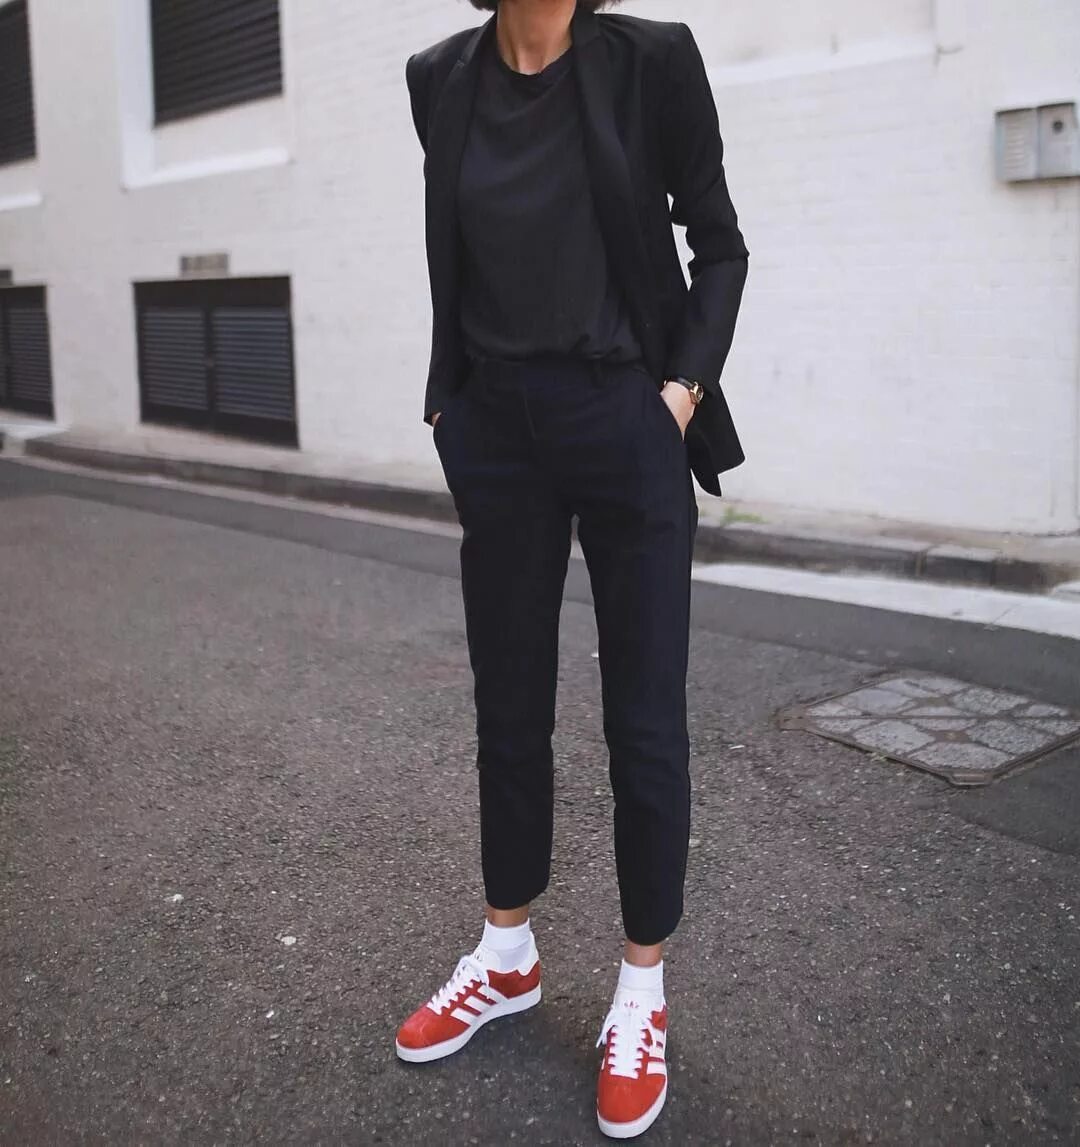 Черные брюки с кроссовками. Adidas Gazelle Red outfit. Adidas Gazelle outfit. Adidas Gazelle образы. Adidas Gazelle looks.